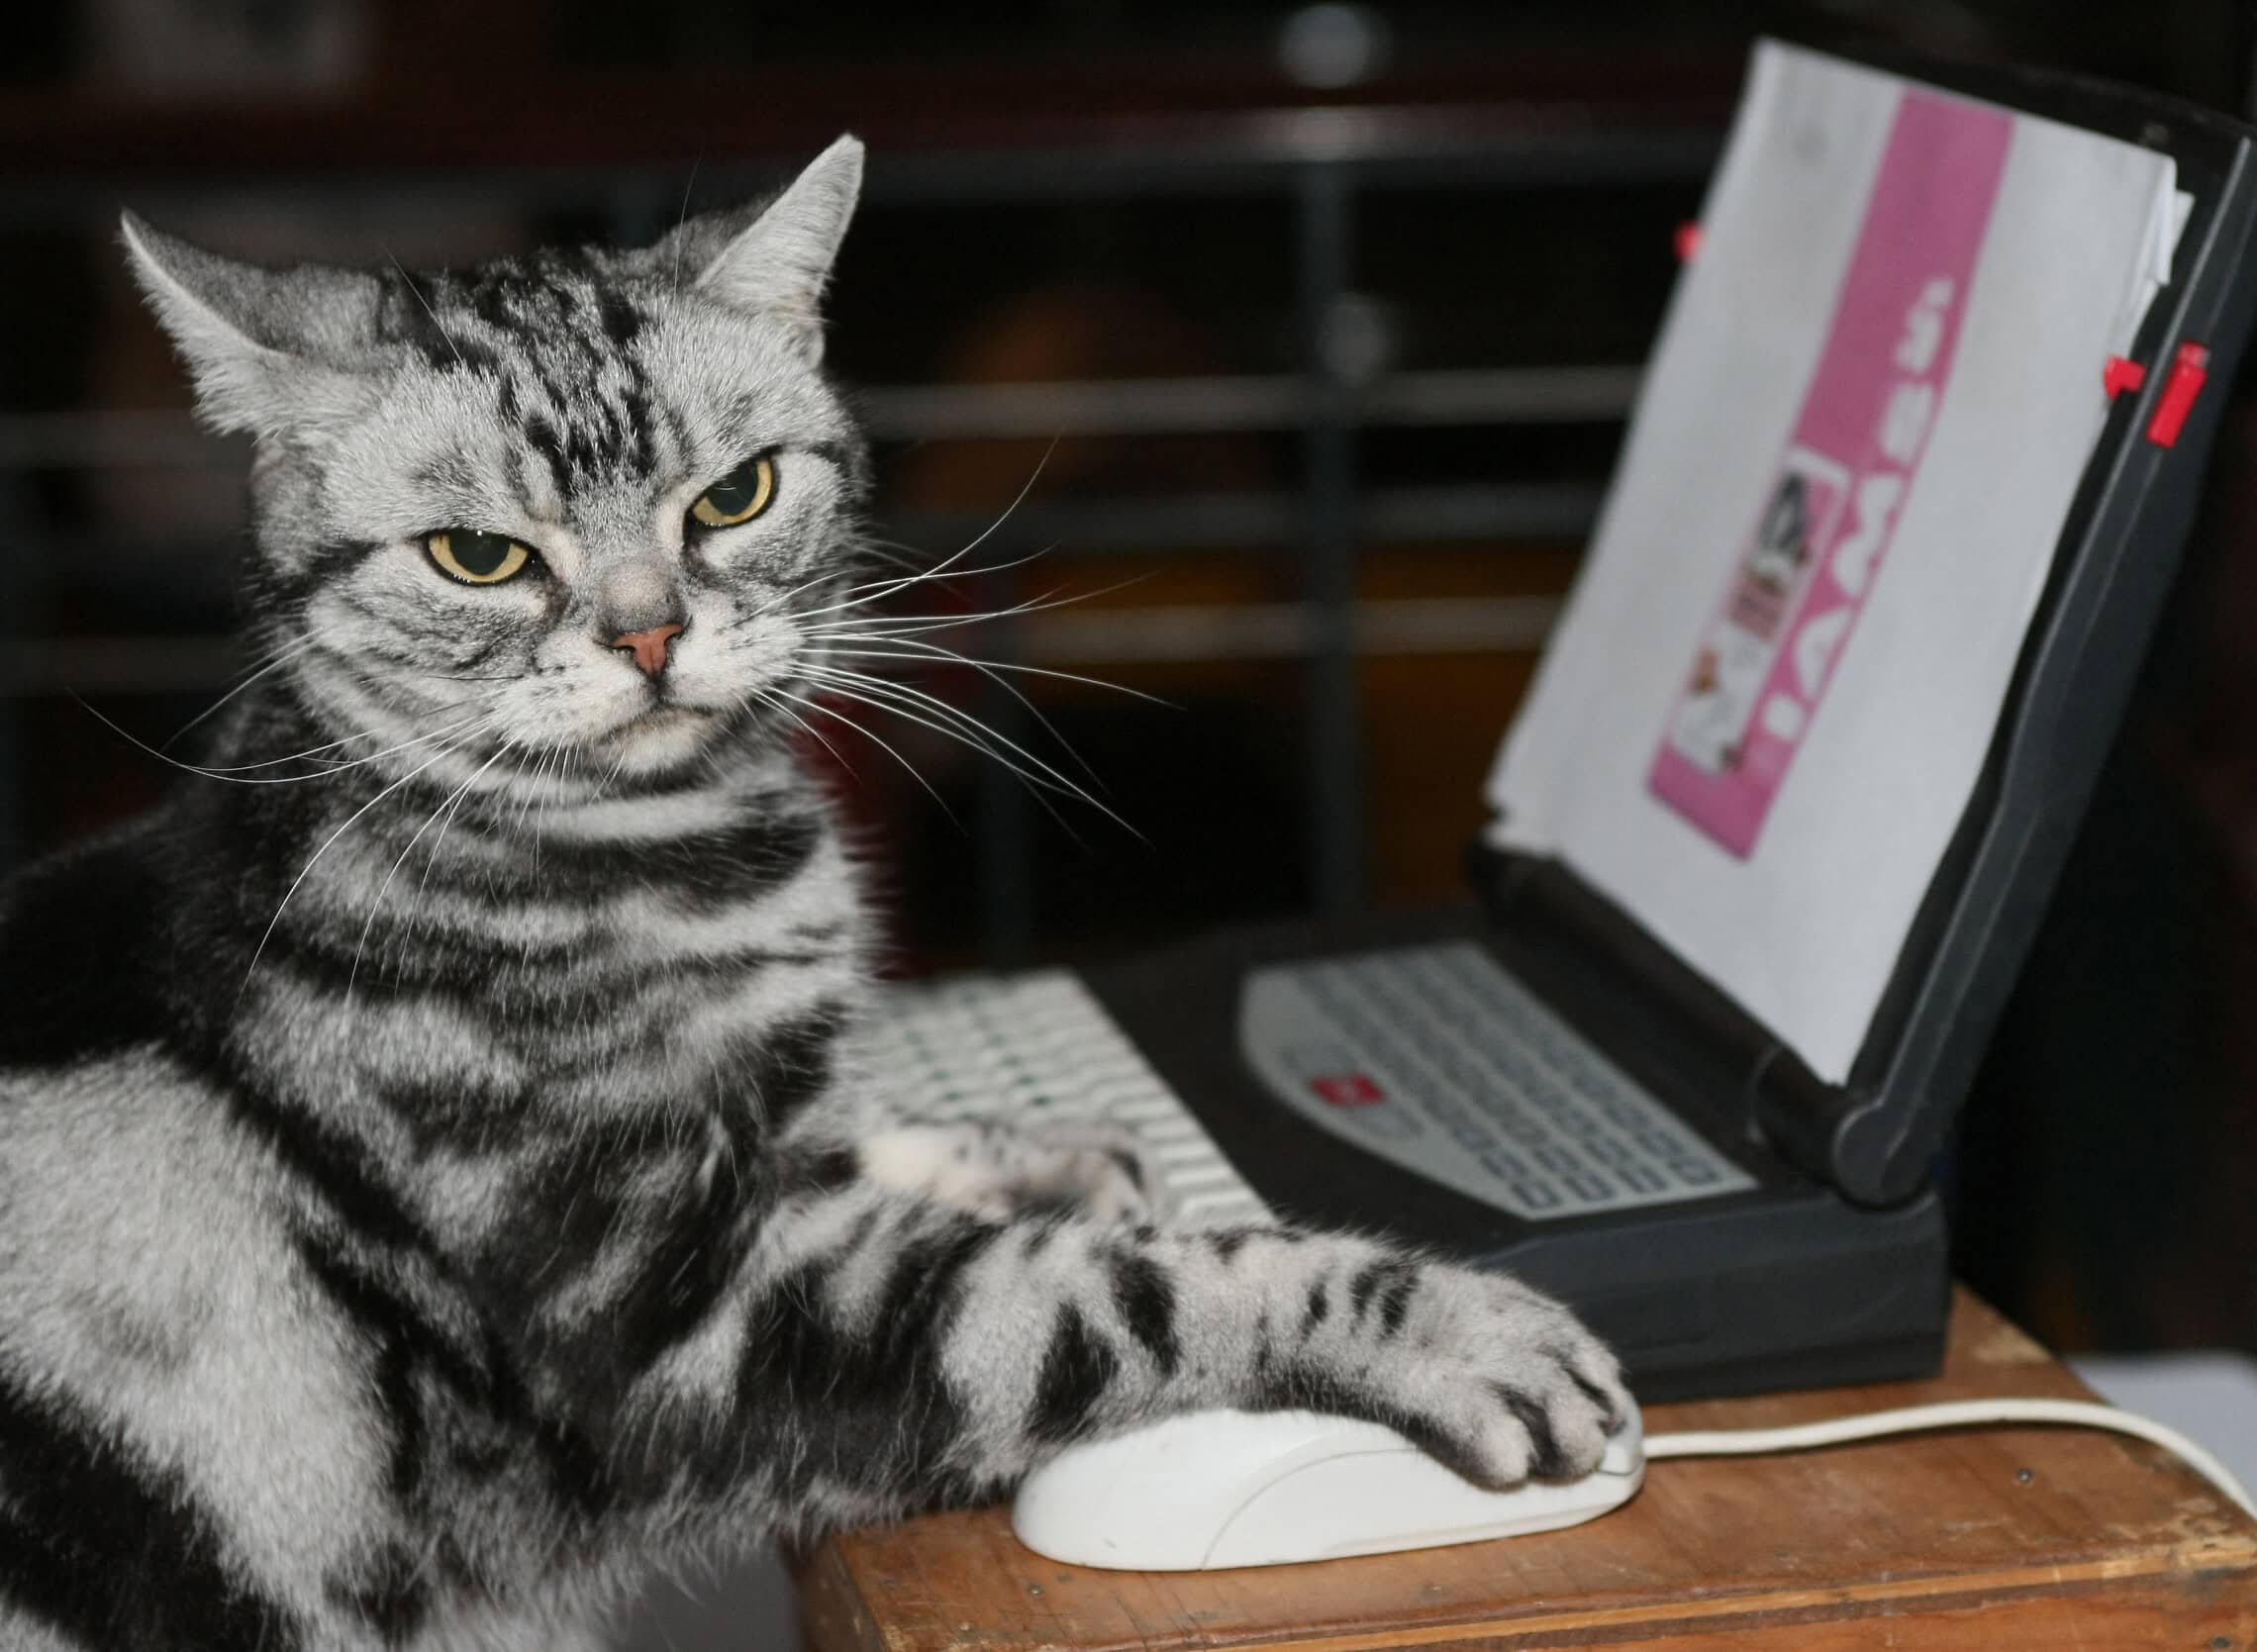 אילוסטרציה: חתול נגד מחשב (צילום: DON EMMERT / AFP)